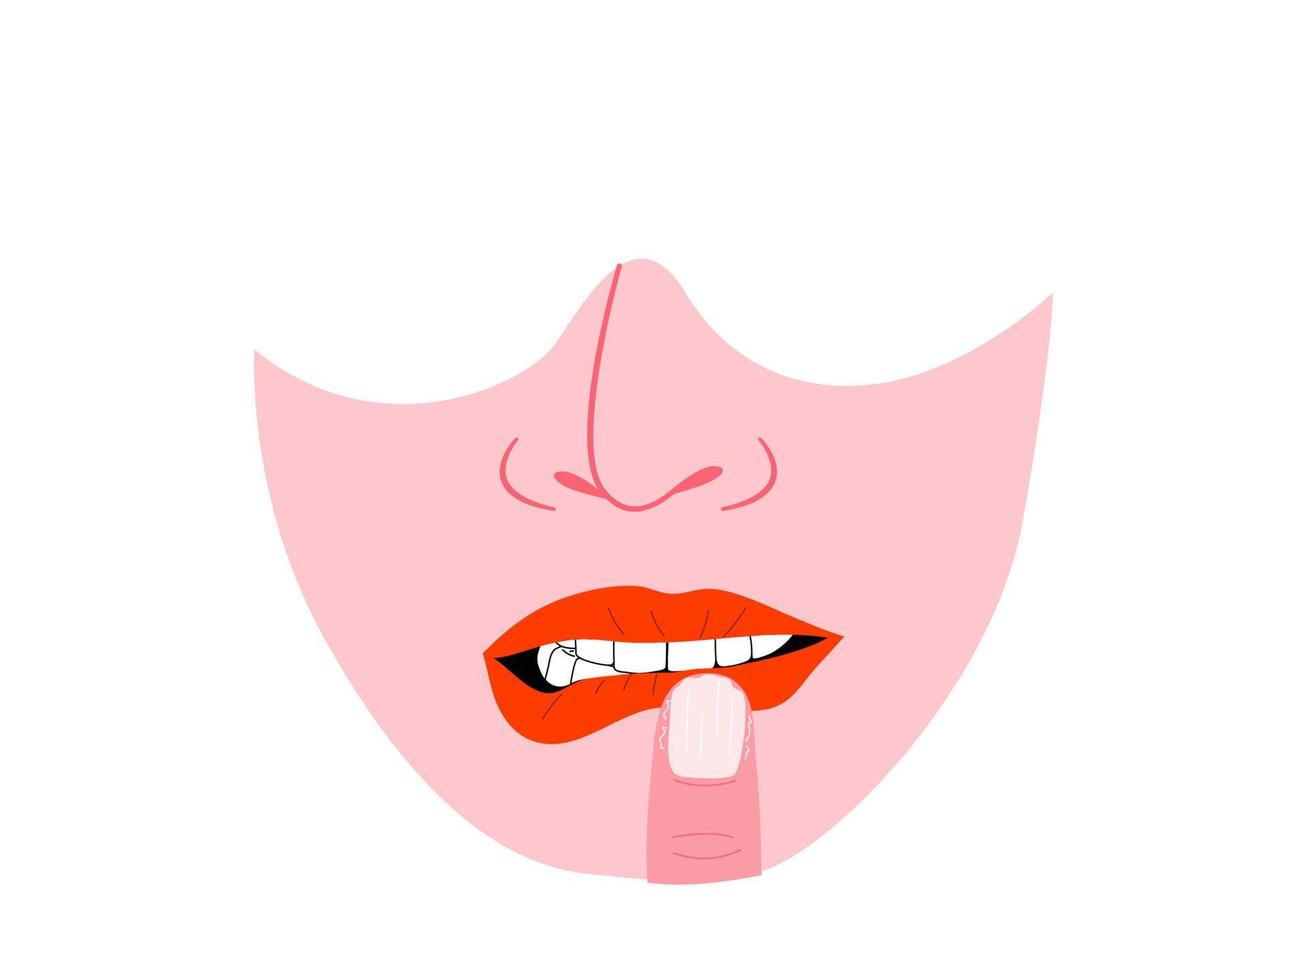 isolado do rosto humano mostrando o distúrbio de roer lábios e unhas, sintoma de bfrbs de comportamentos repetitivos focados no corpo. ilustração em vetor plana.